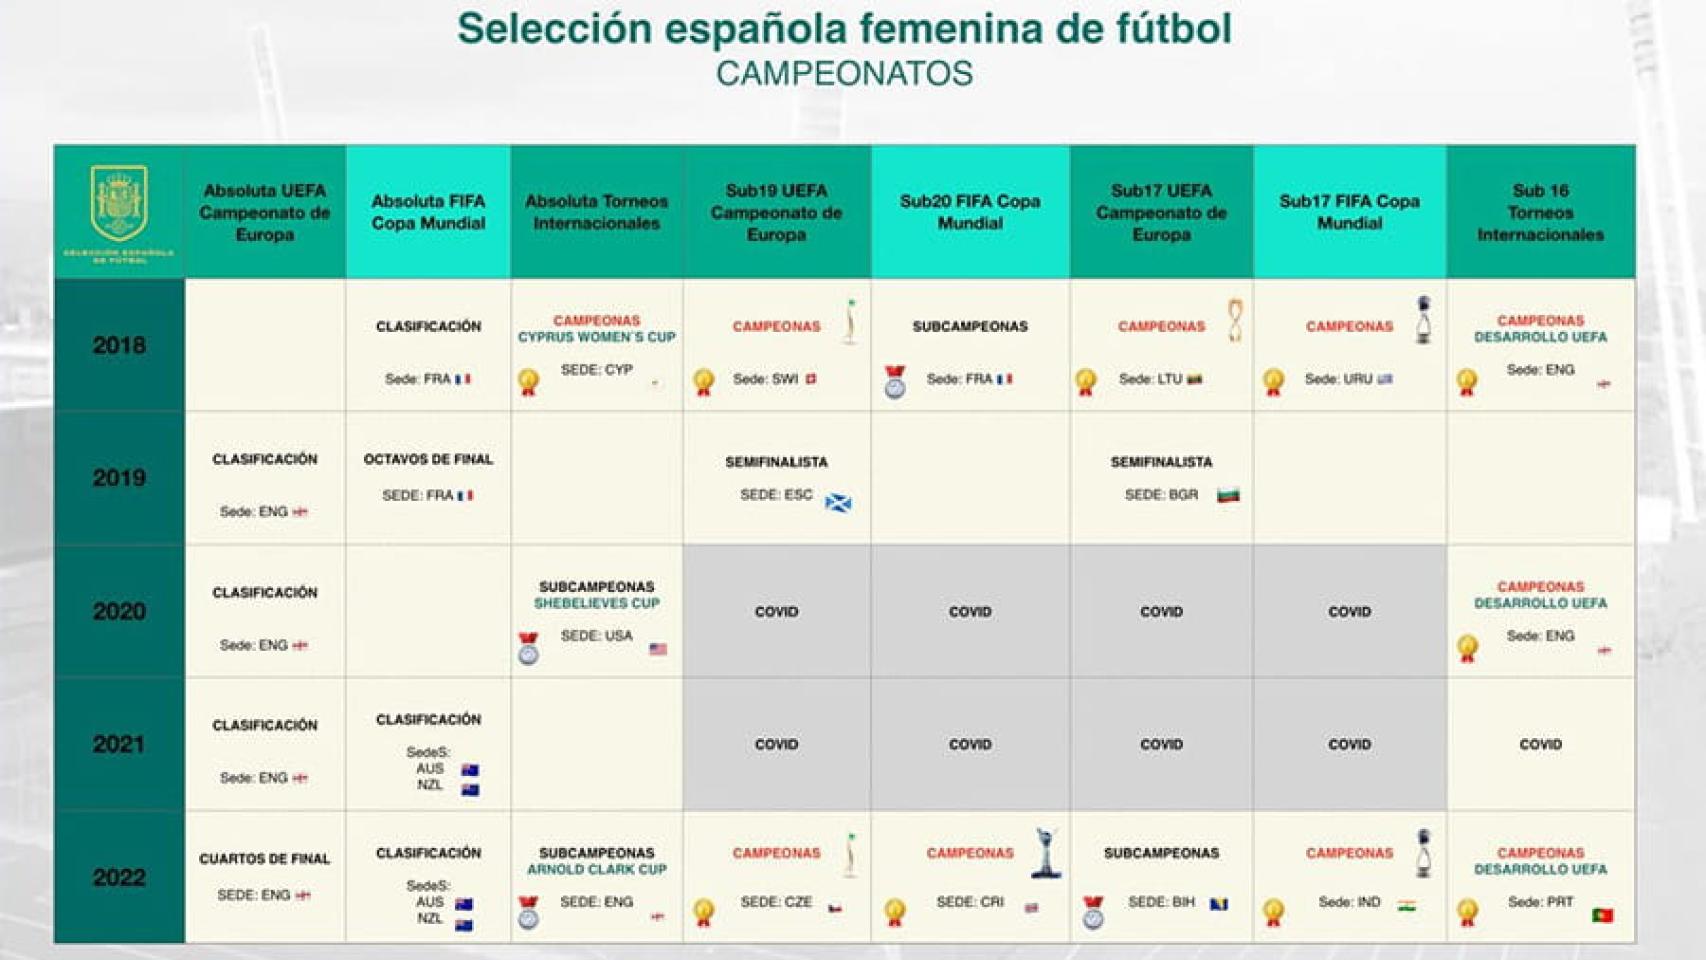 Palmarés del fútbol femenino de la RFEF